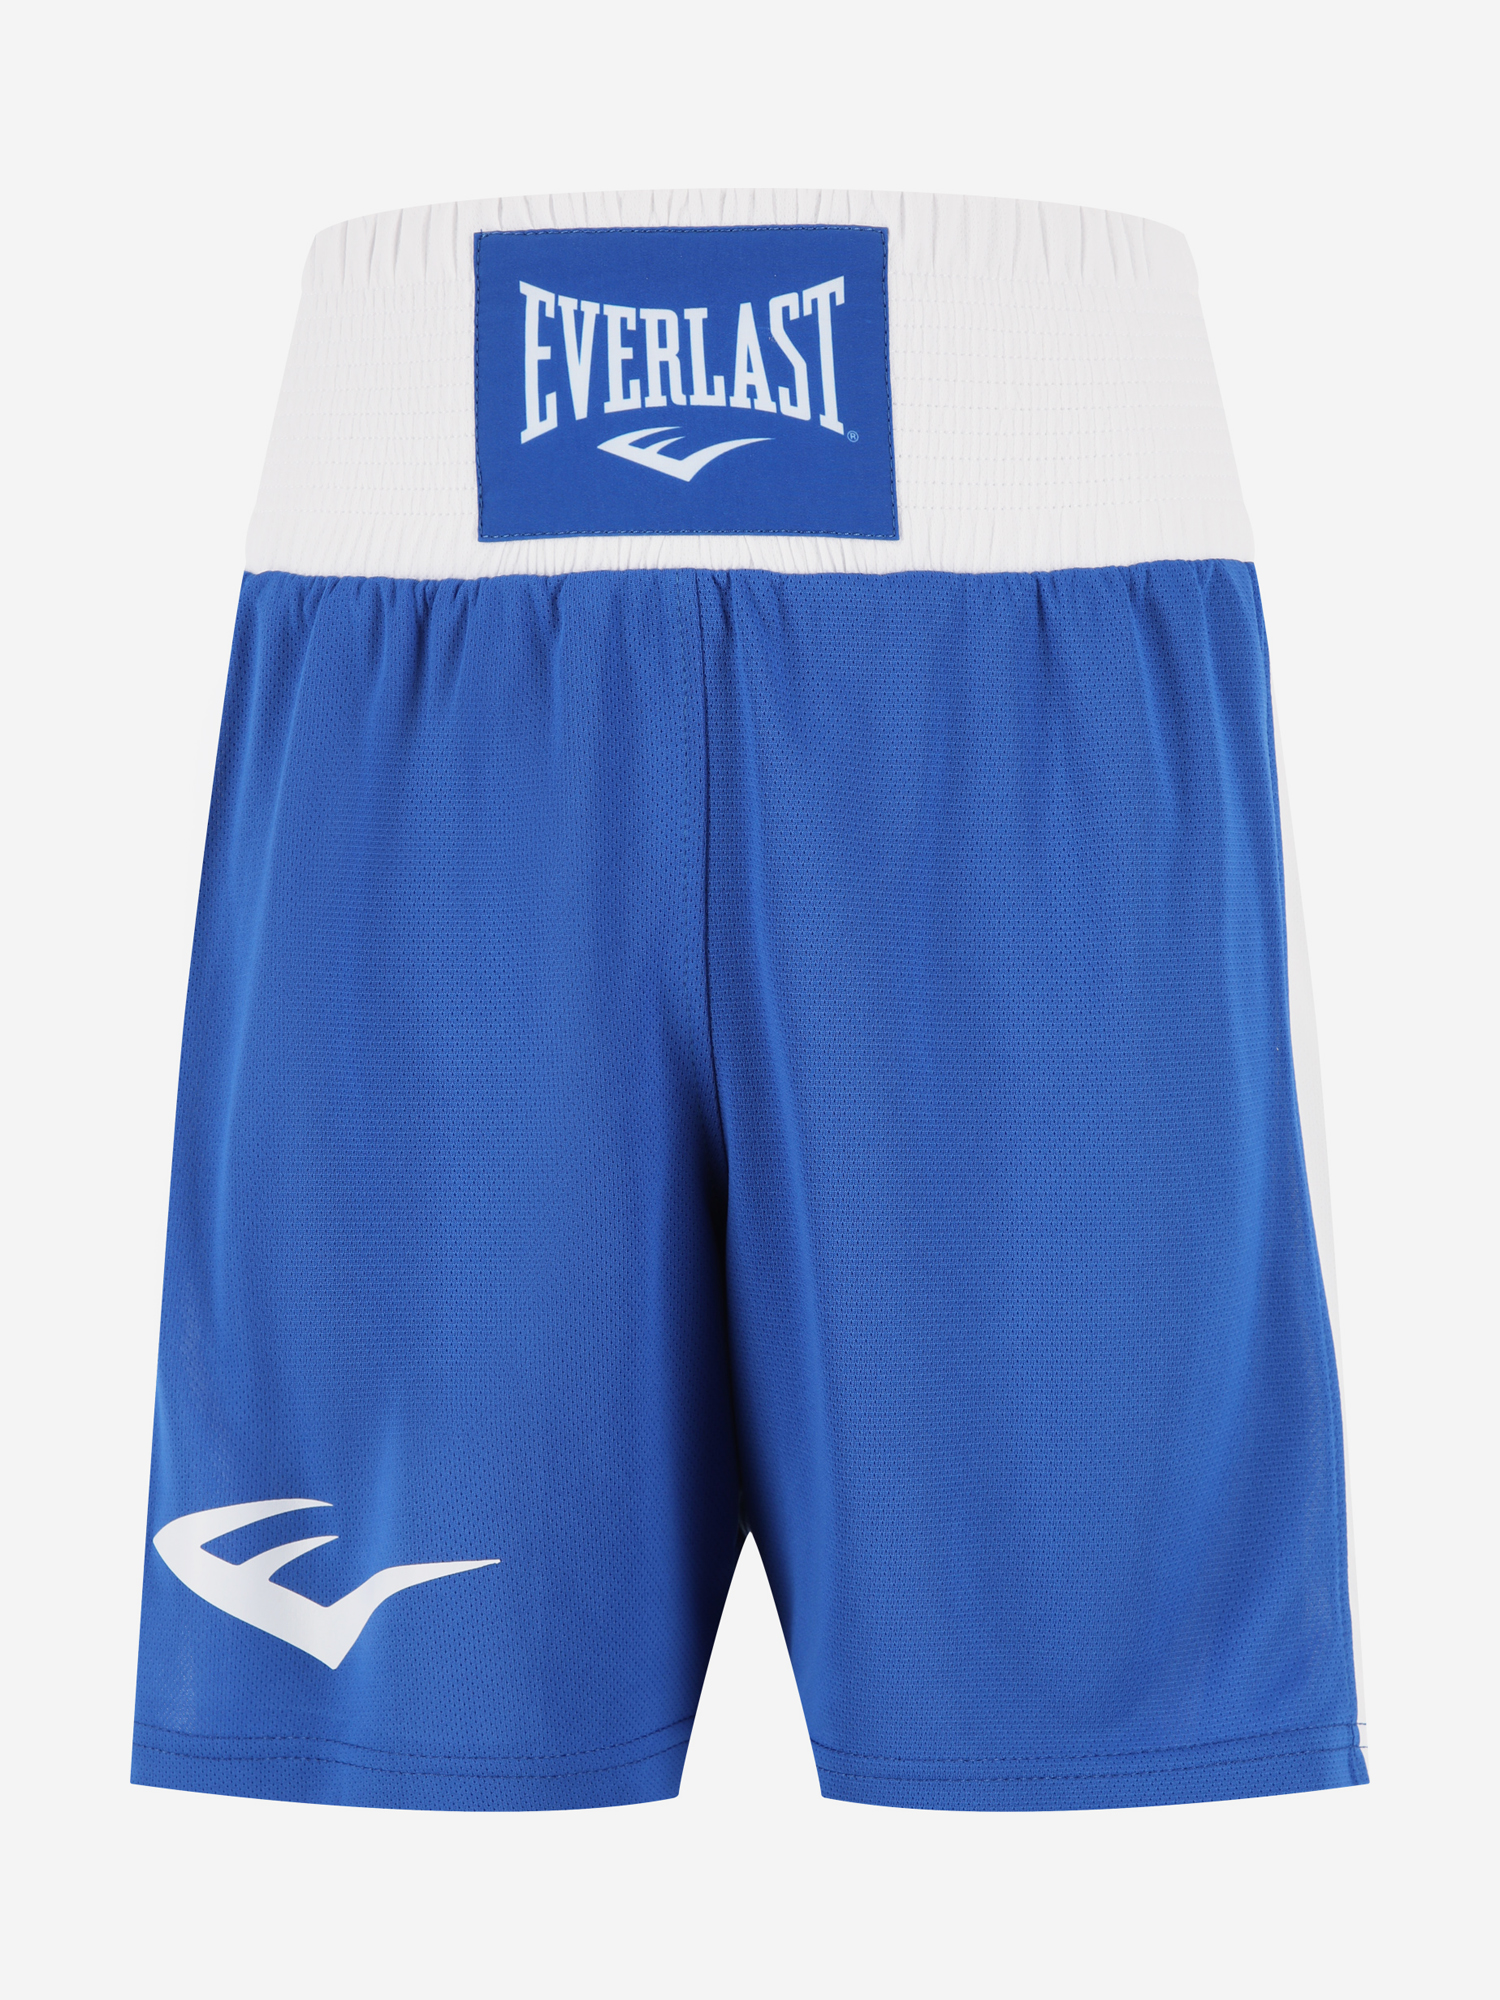 Шорты для бокса детские Everlast Elite, Синий шорты для бокса детские everlast elite синий